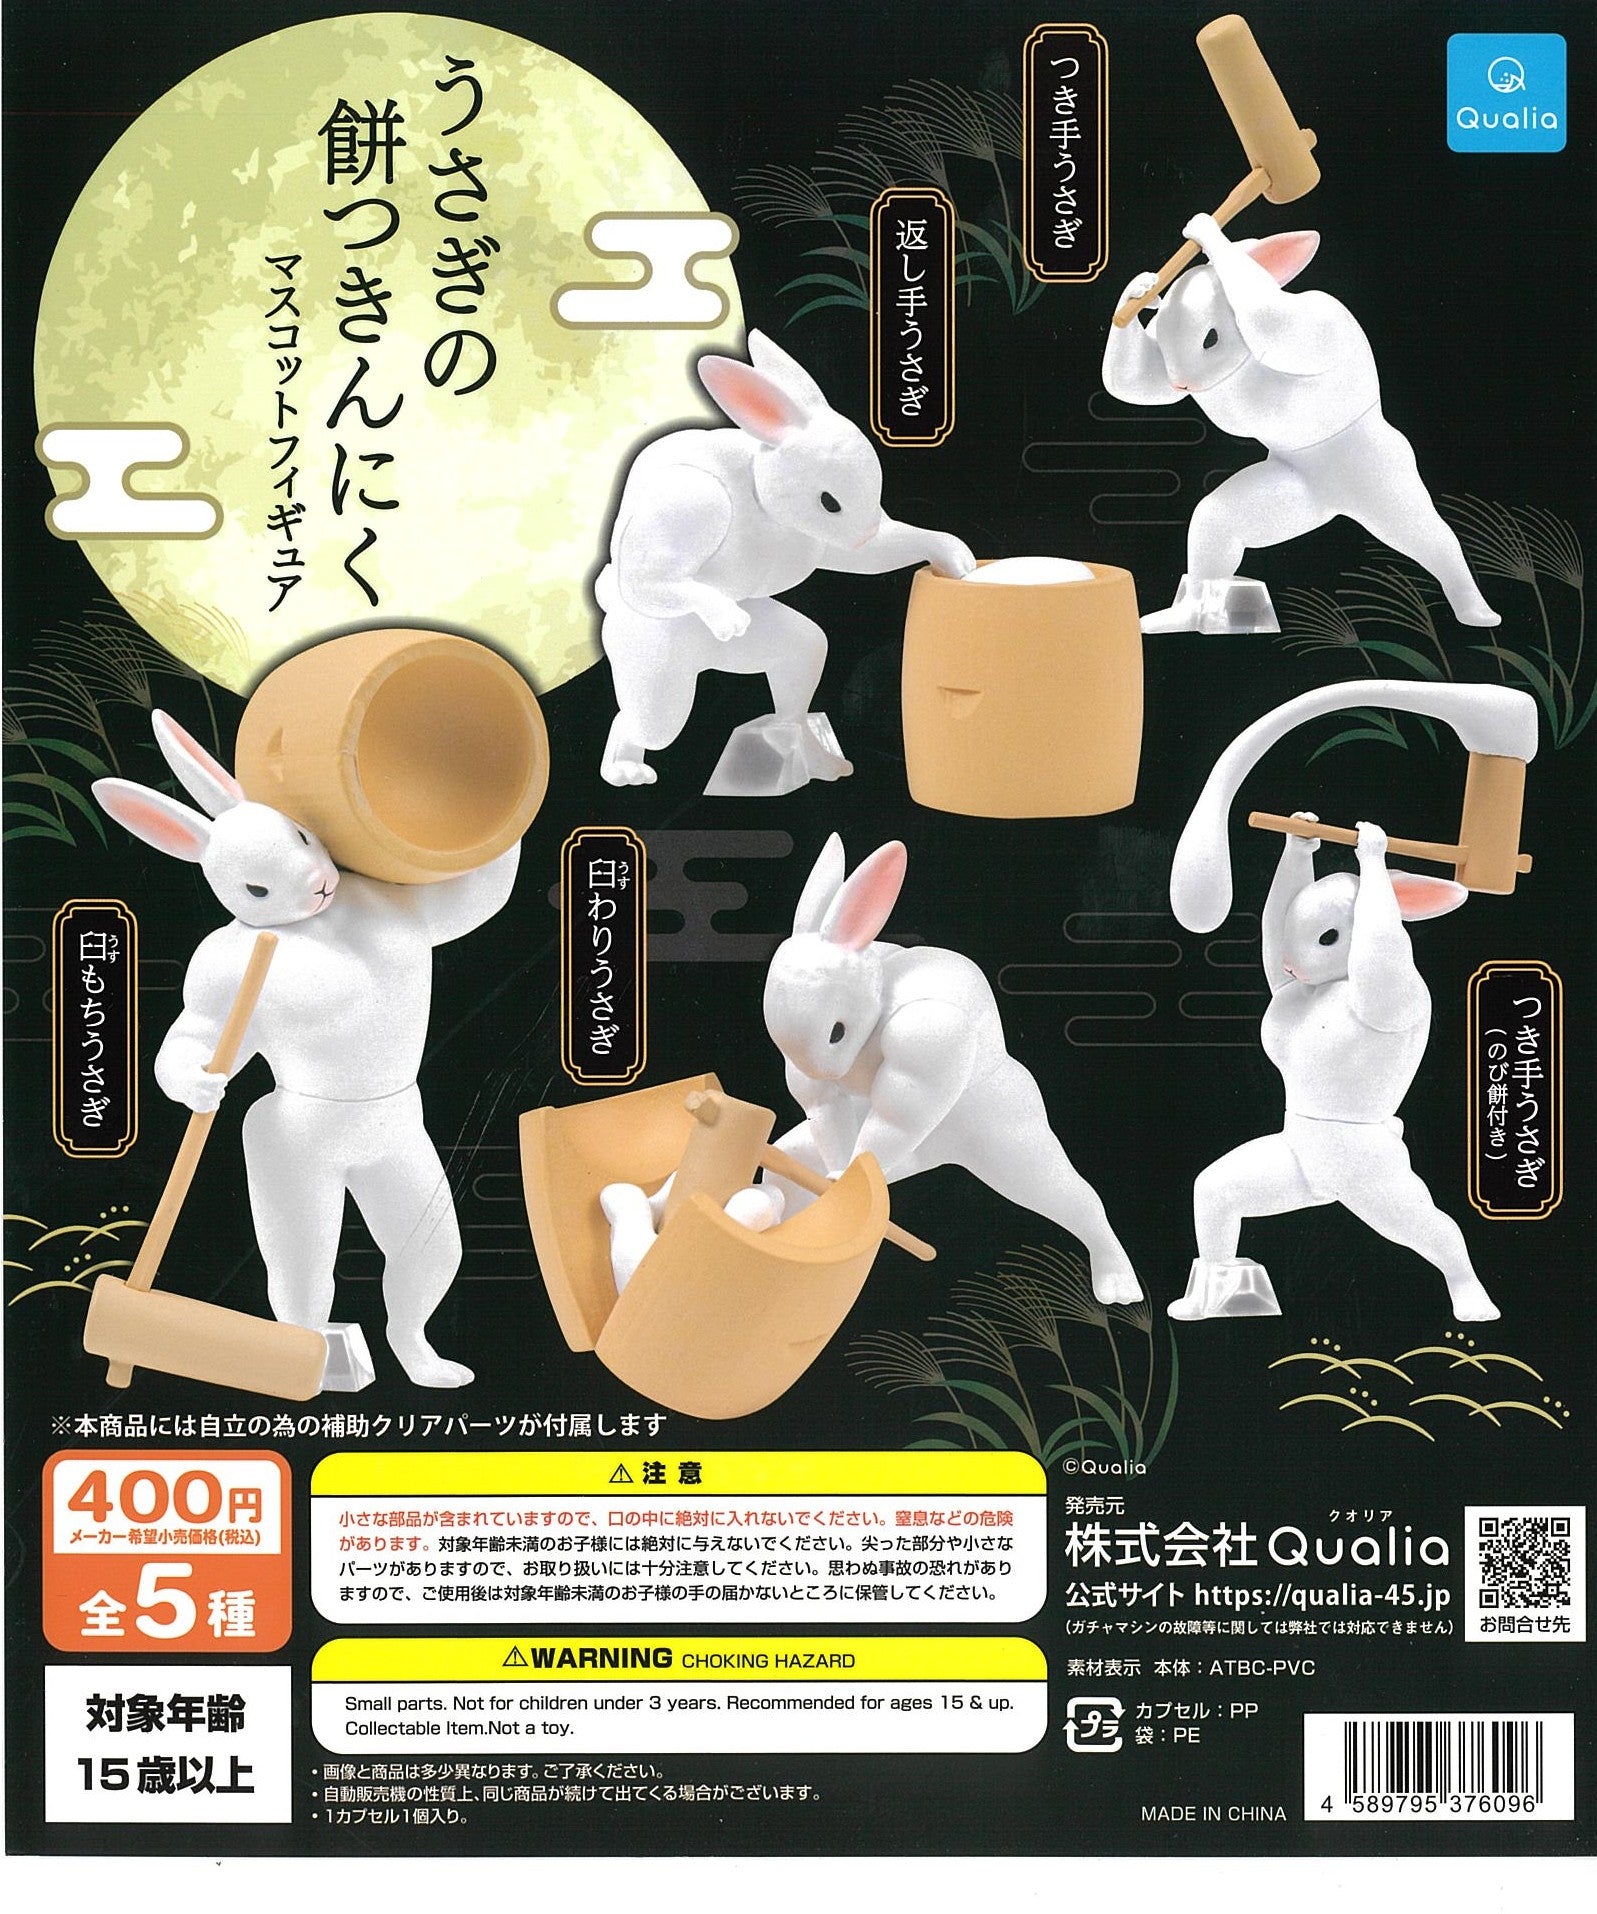 CP2489 Rabbit Mochitsuki Muscle Mascot Figure